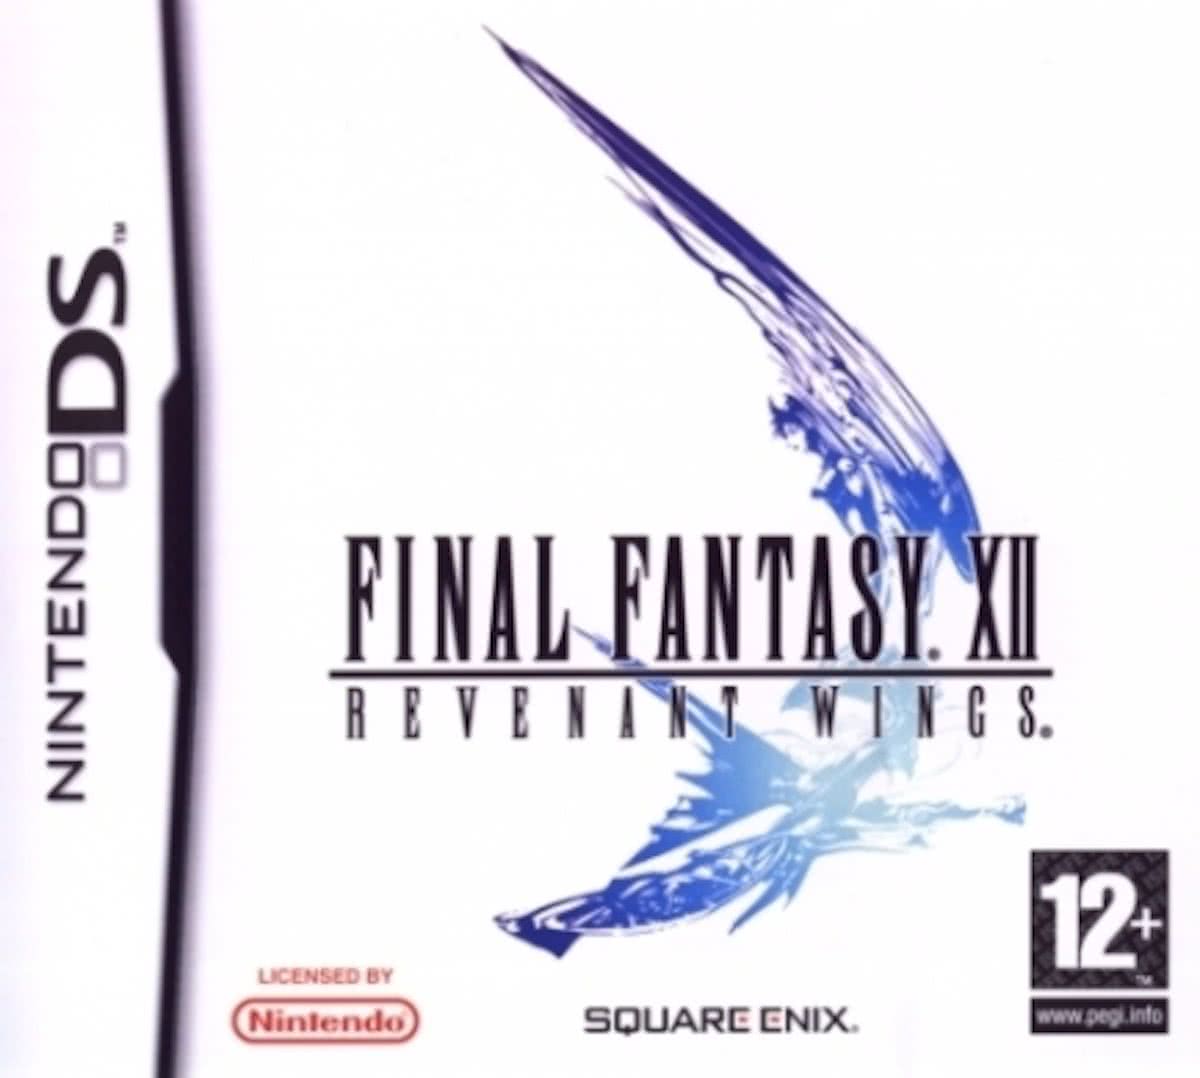 Final Fantasy Xii - Revenant Wings